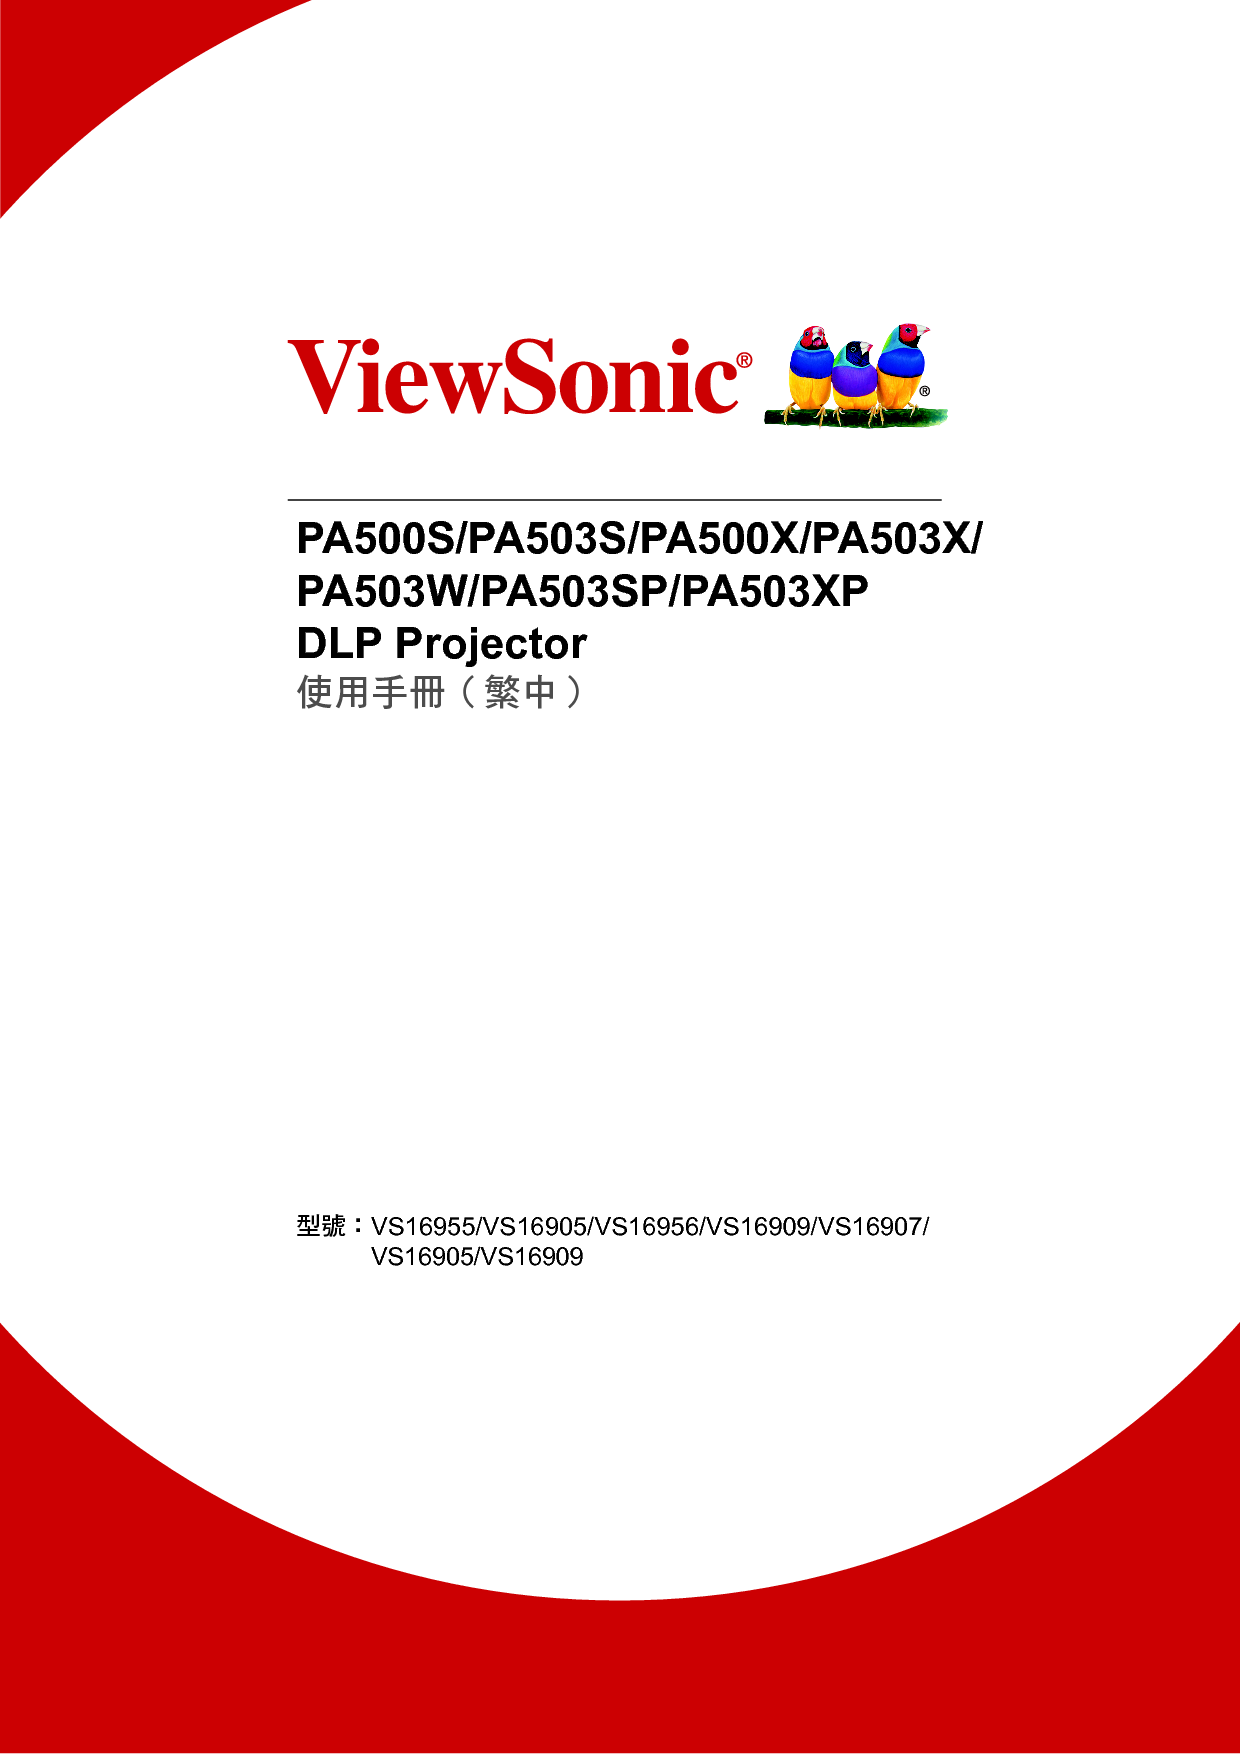 优派 ViewSonic PA500S, PA503XP 繁体 使用说明书 封面